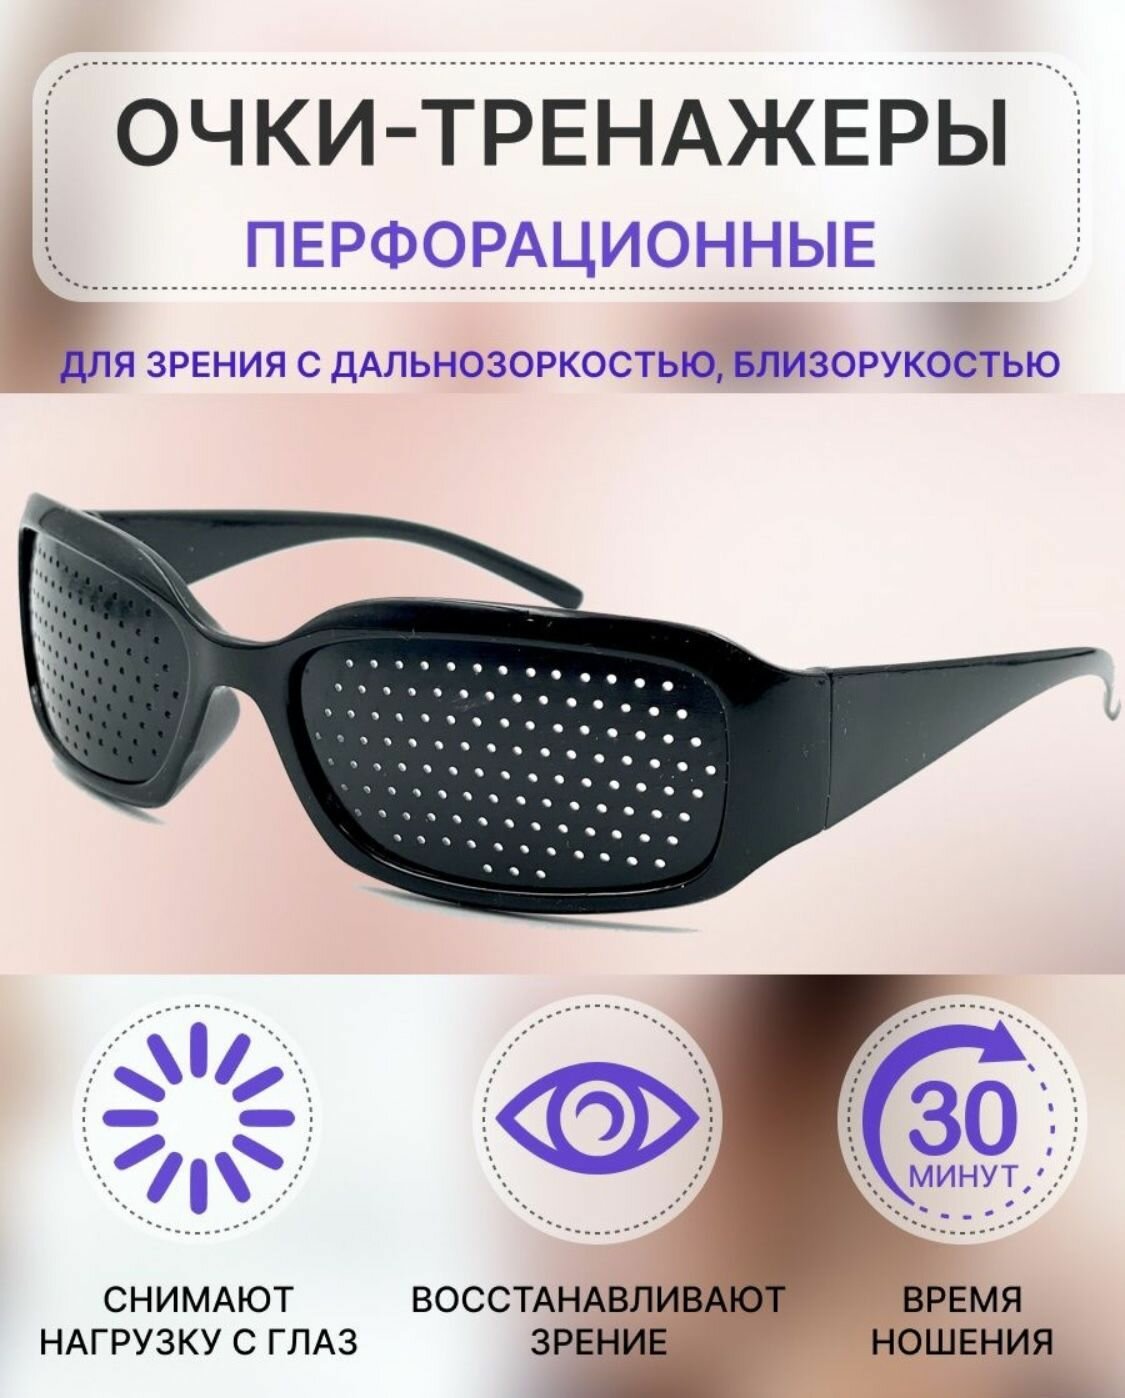 Очки тренажеры перфорационные для тренировки зрения / очки с дырочками